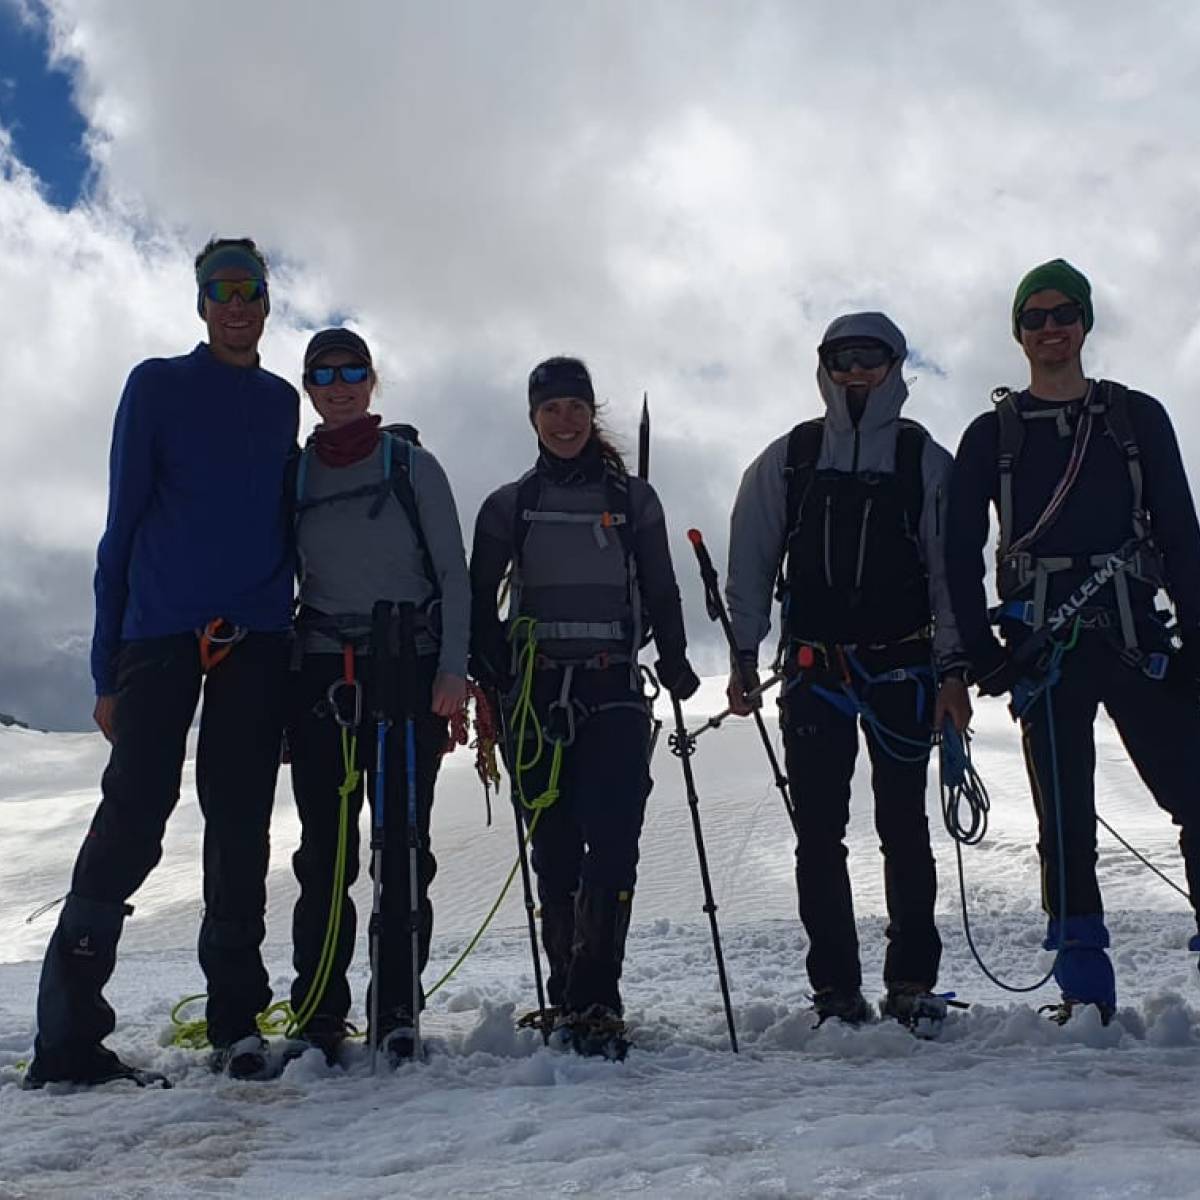 Gletscherkurs auf der Oberwalderhütte (Glocknergruppe) vom 24. -26.6.2022